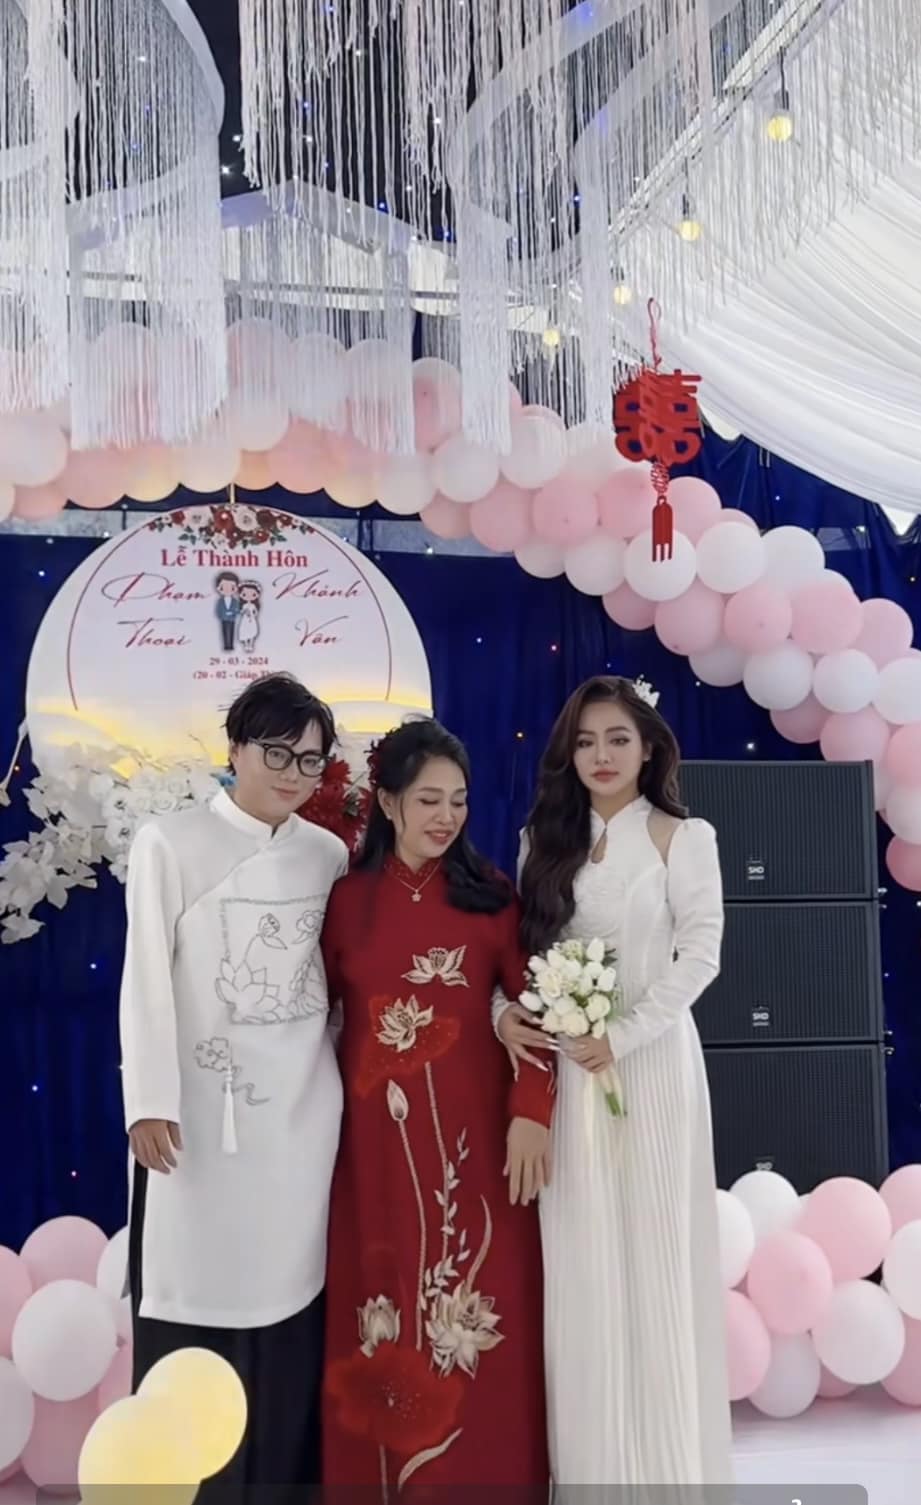 Không còn nghi ngờ: Đã phát trực tiếp đám cưới của Phạm Thoại ở quê, cô dâu xinh như 'con lai' - ảnh 1